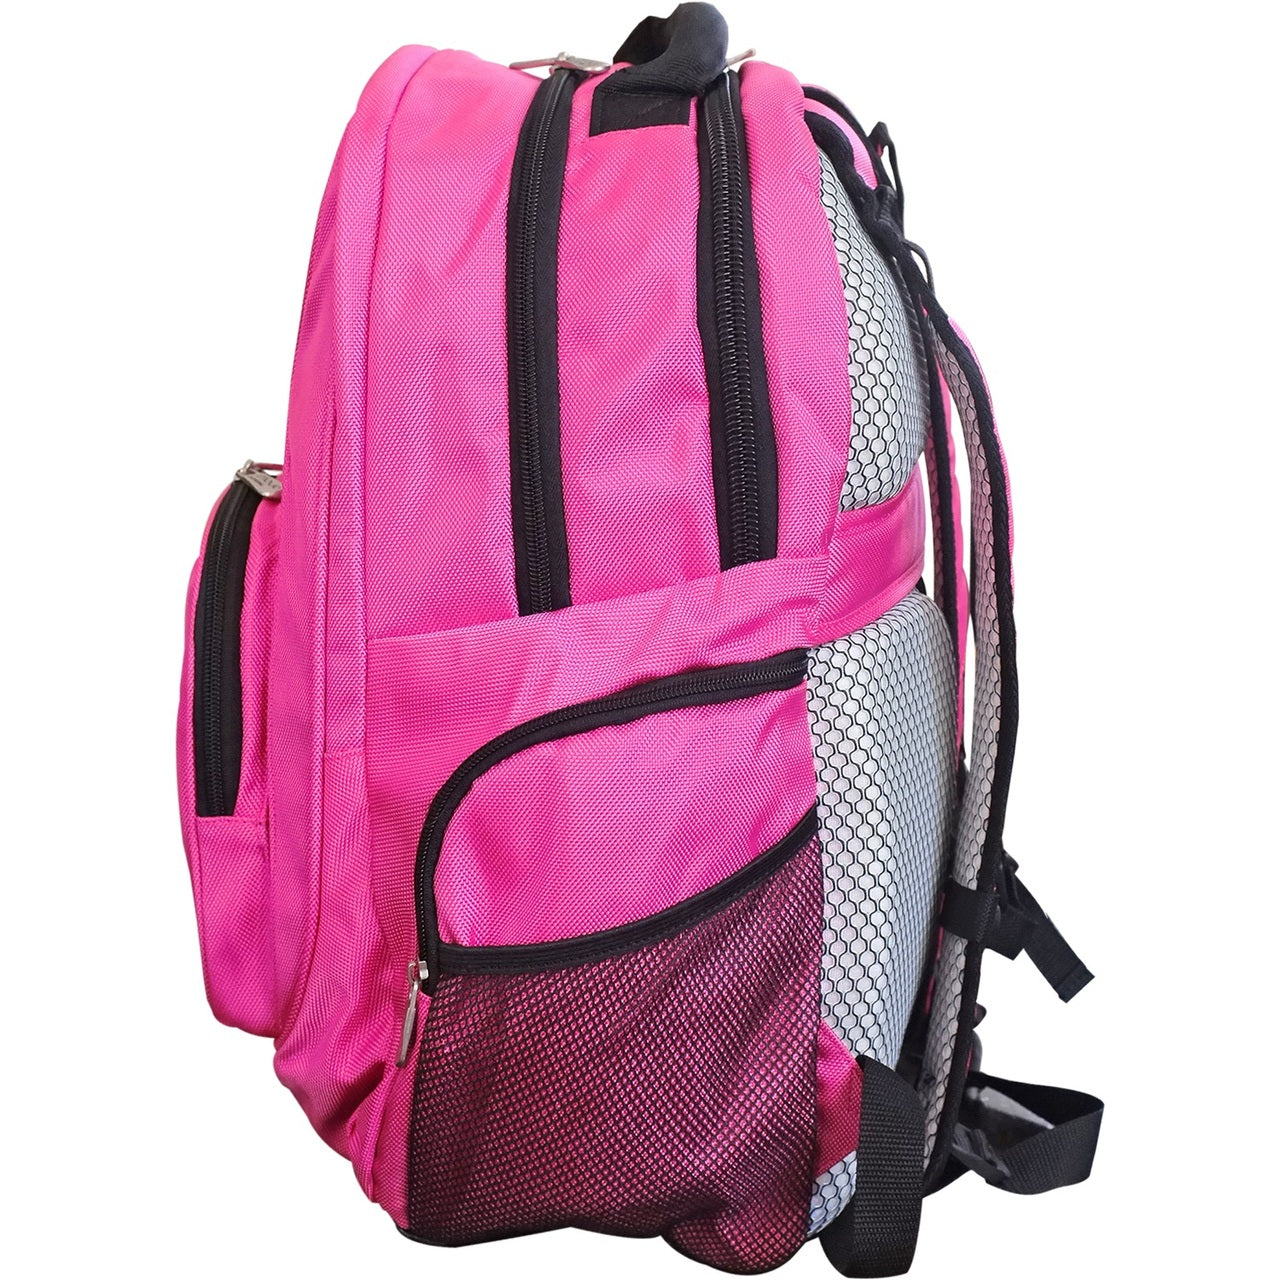 Bengals Backpack | Cincinnati Bengals Laptop Backpack- Pink